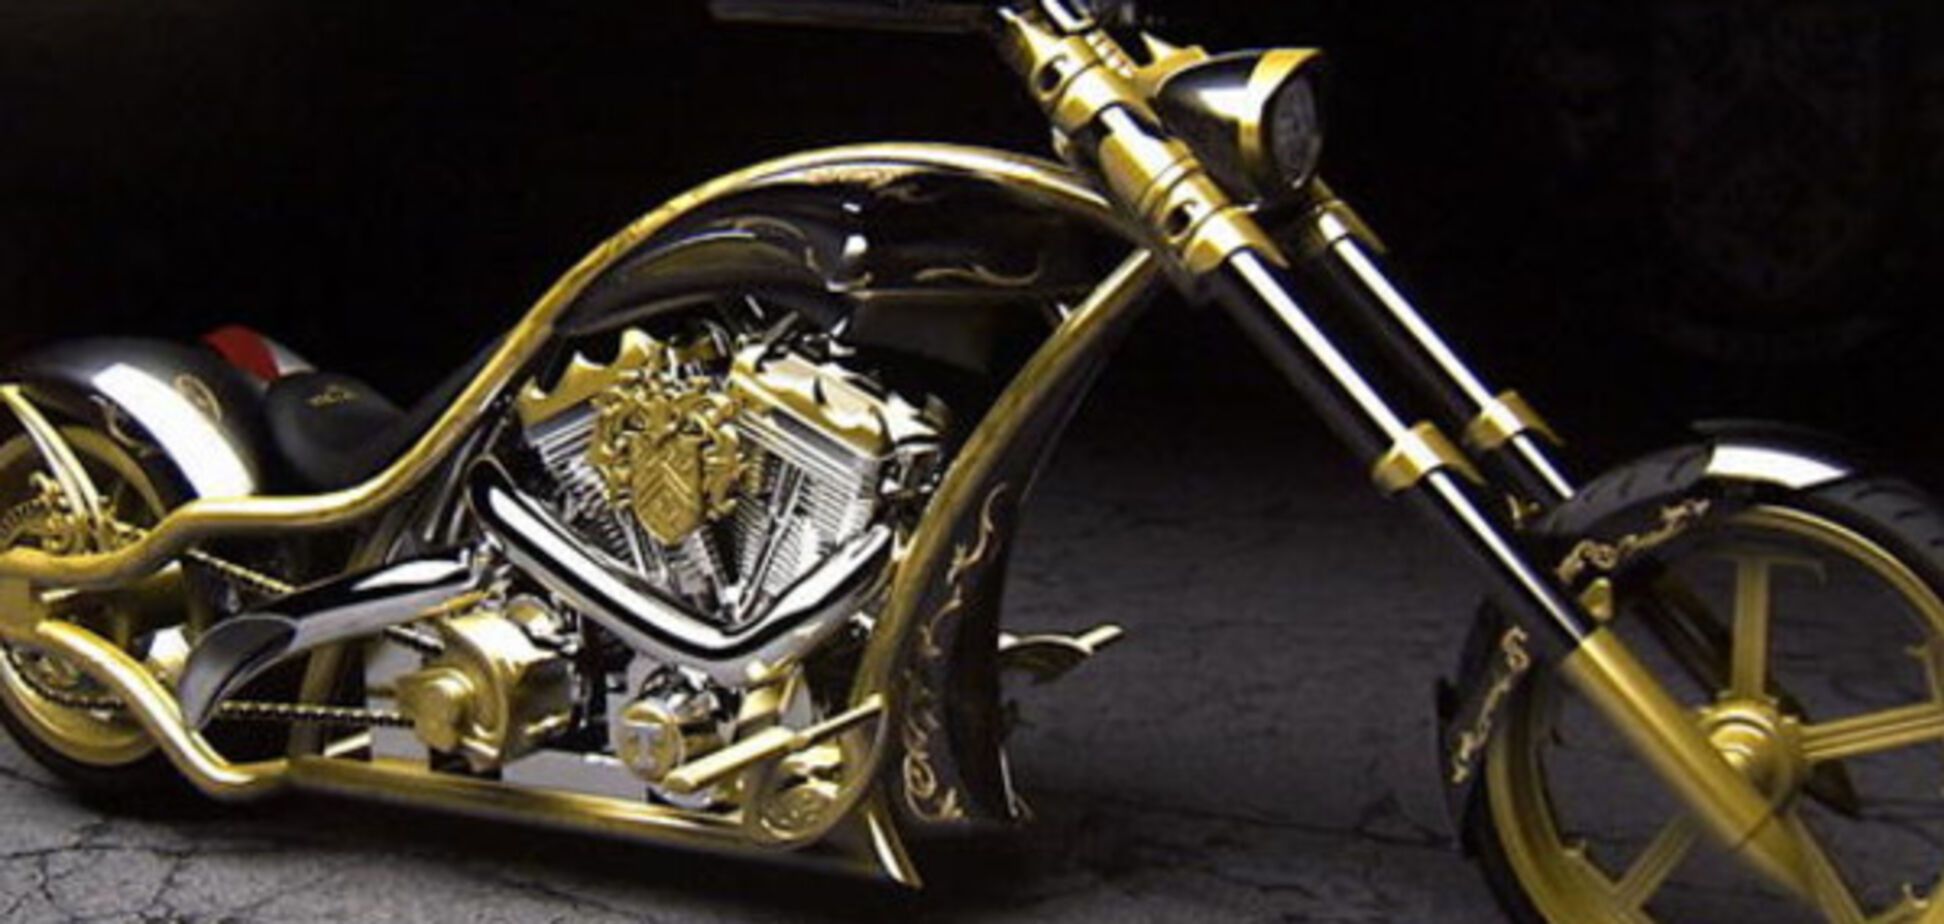 Любит чистое золото: как выглядит личный мотоцикл Дональда Трампа 